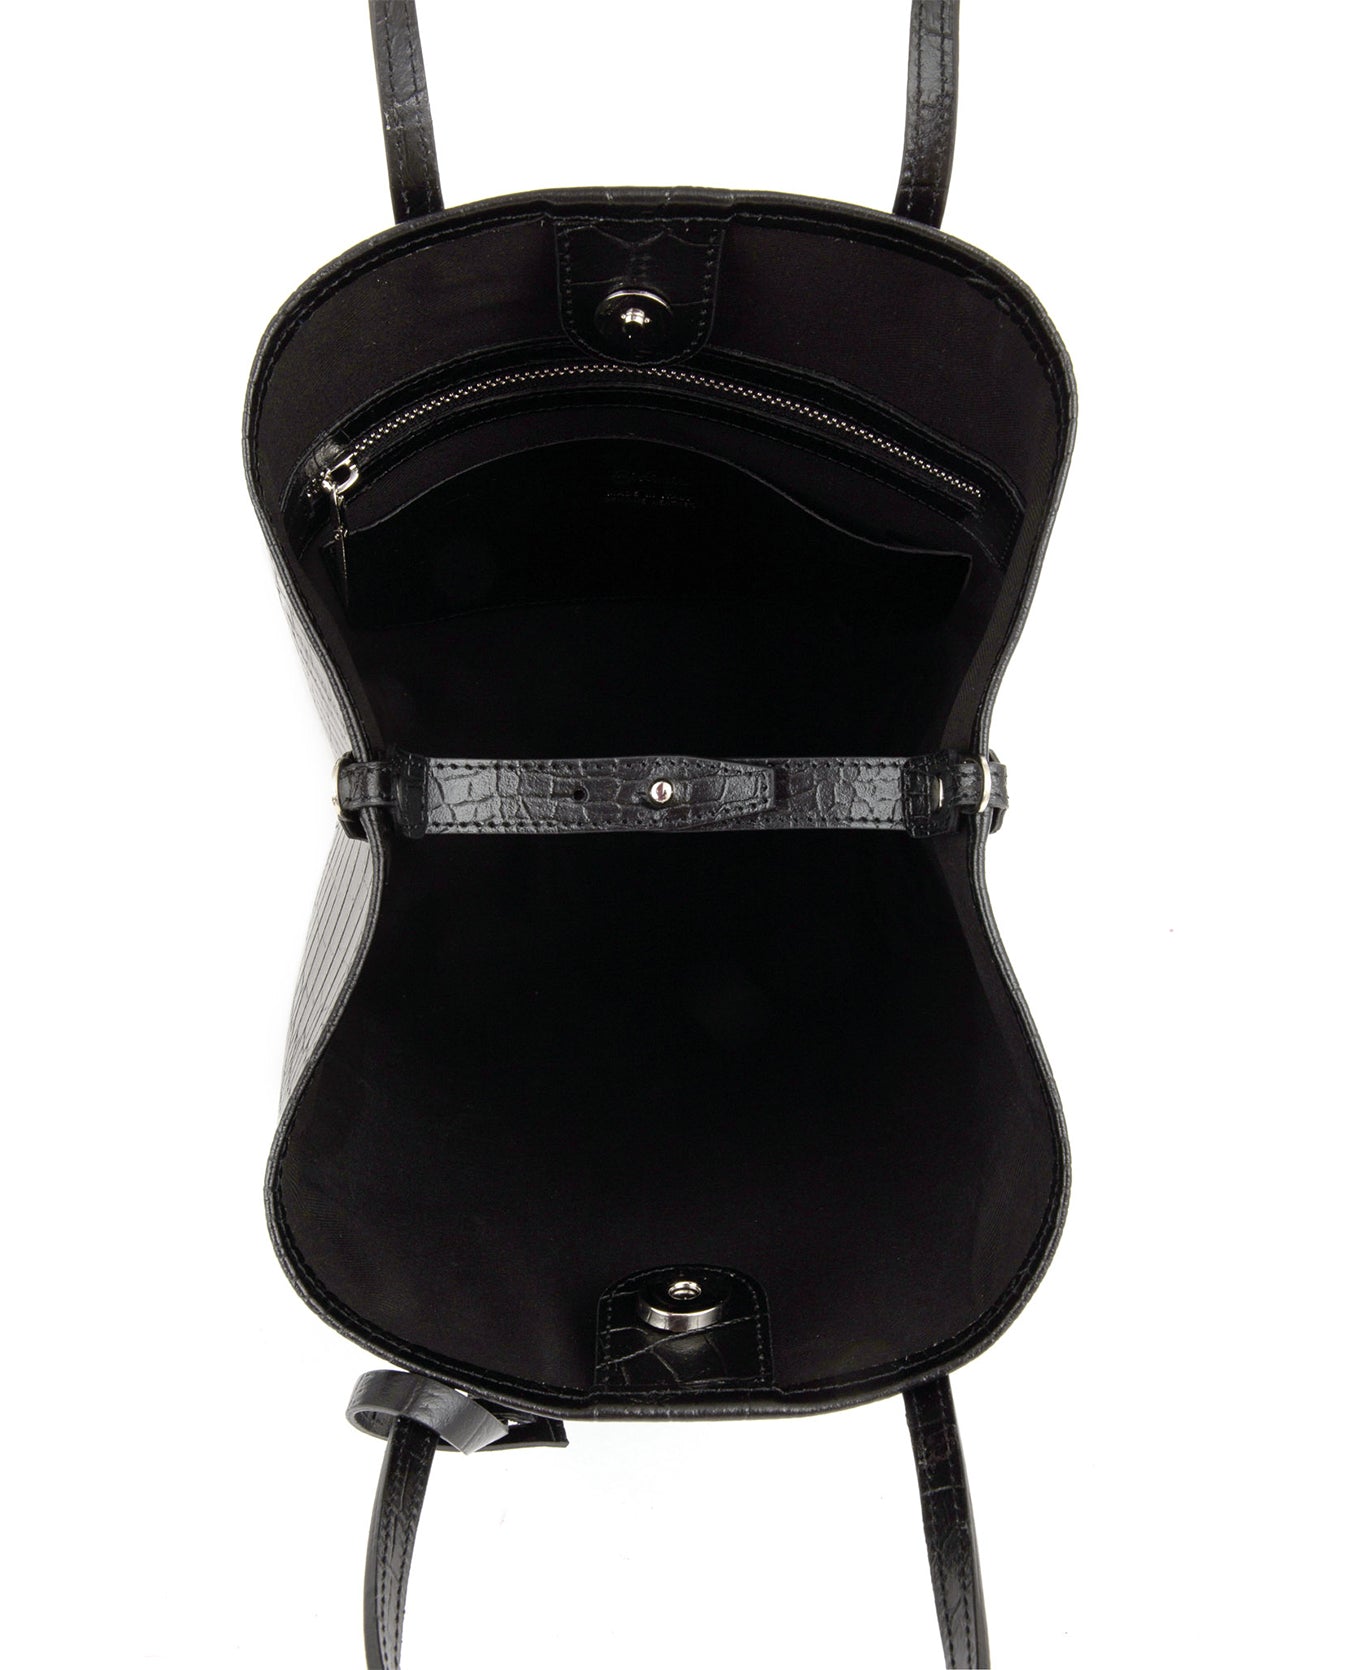 belt design leather bag, black crocodile leather bag, practical and stylish bag, versatile bag for any occasion, ideal bag for daytime strolls